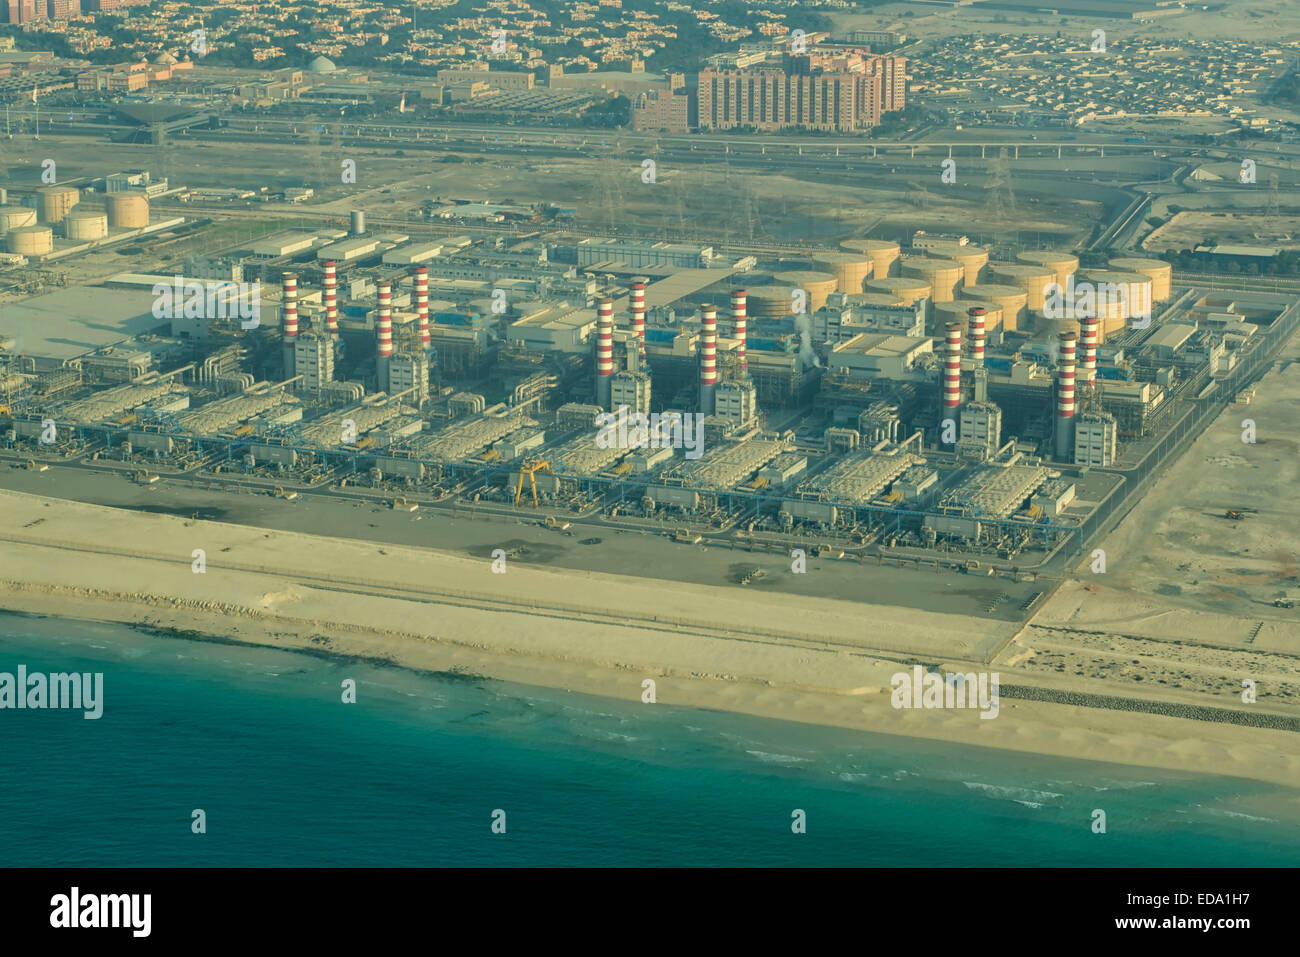 Aluminum Plant in Dubai, UAE Stock Photo